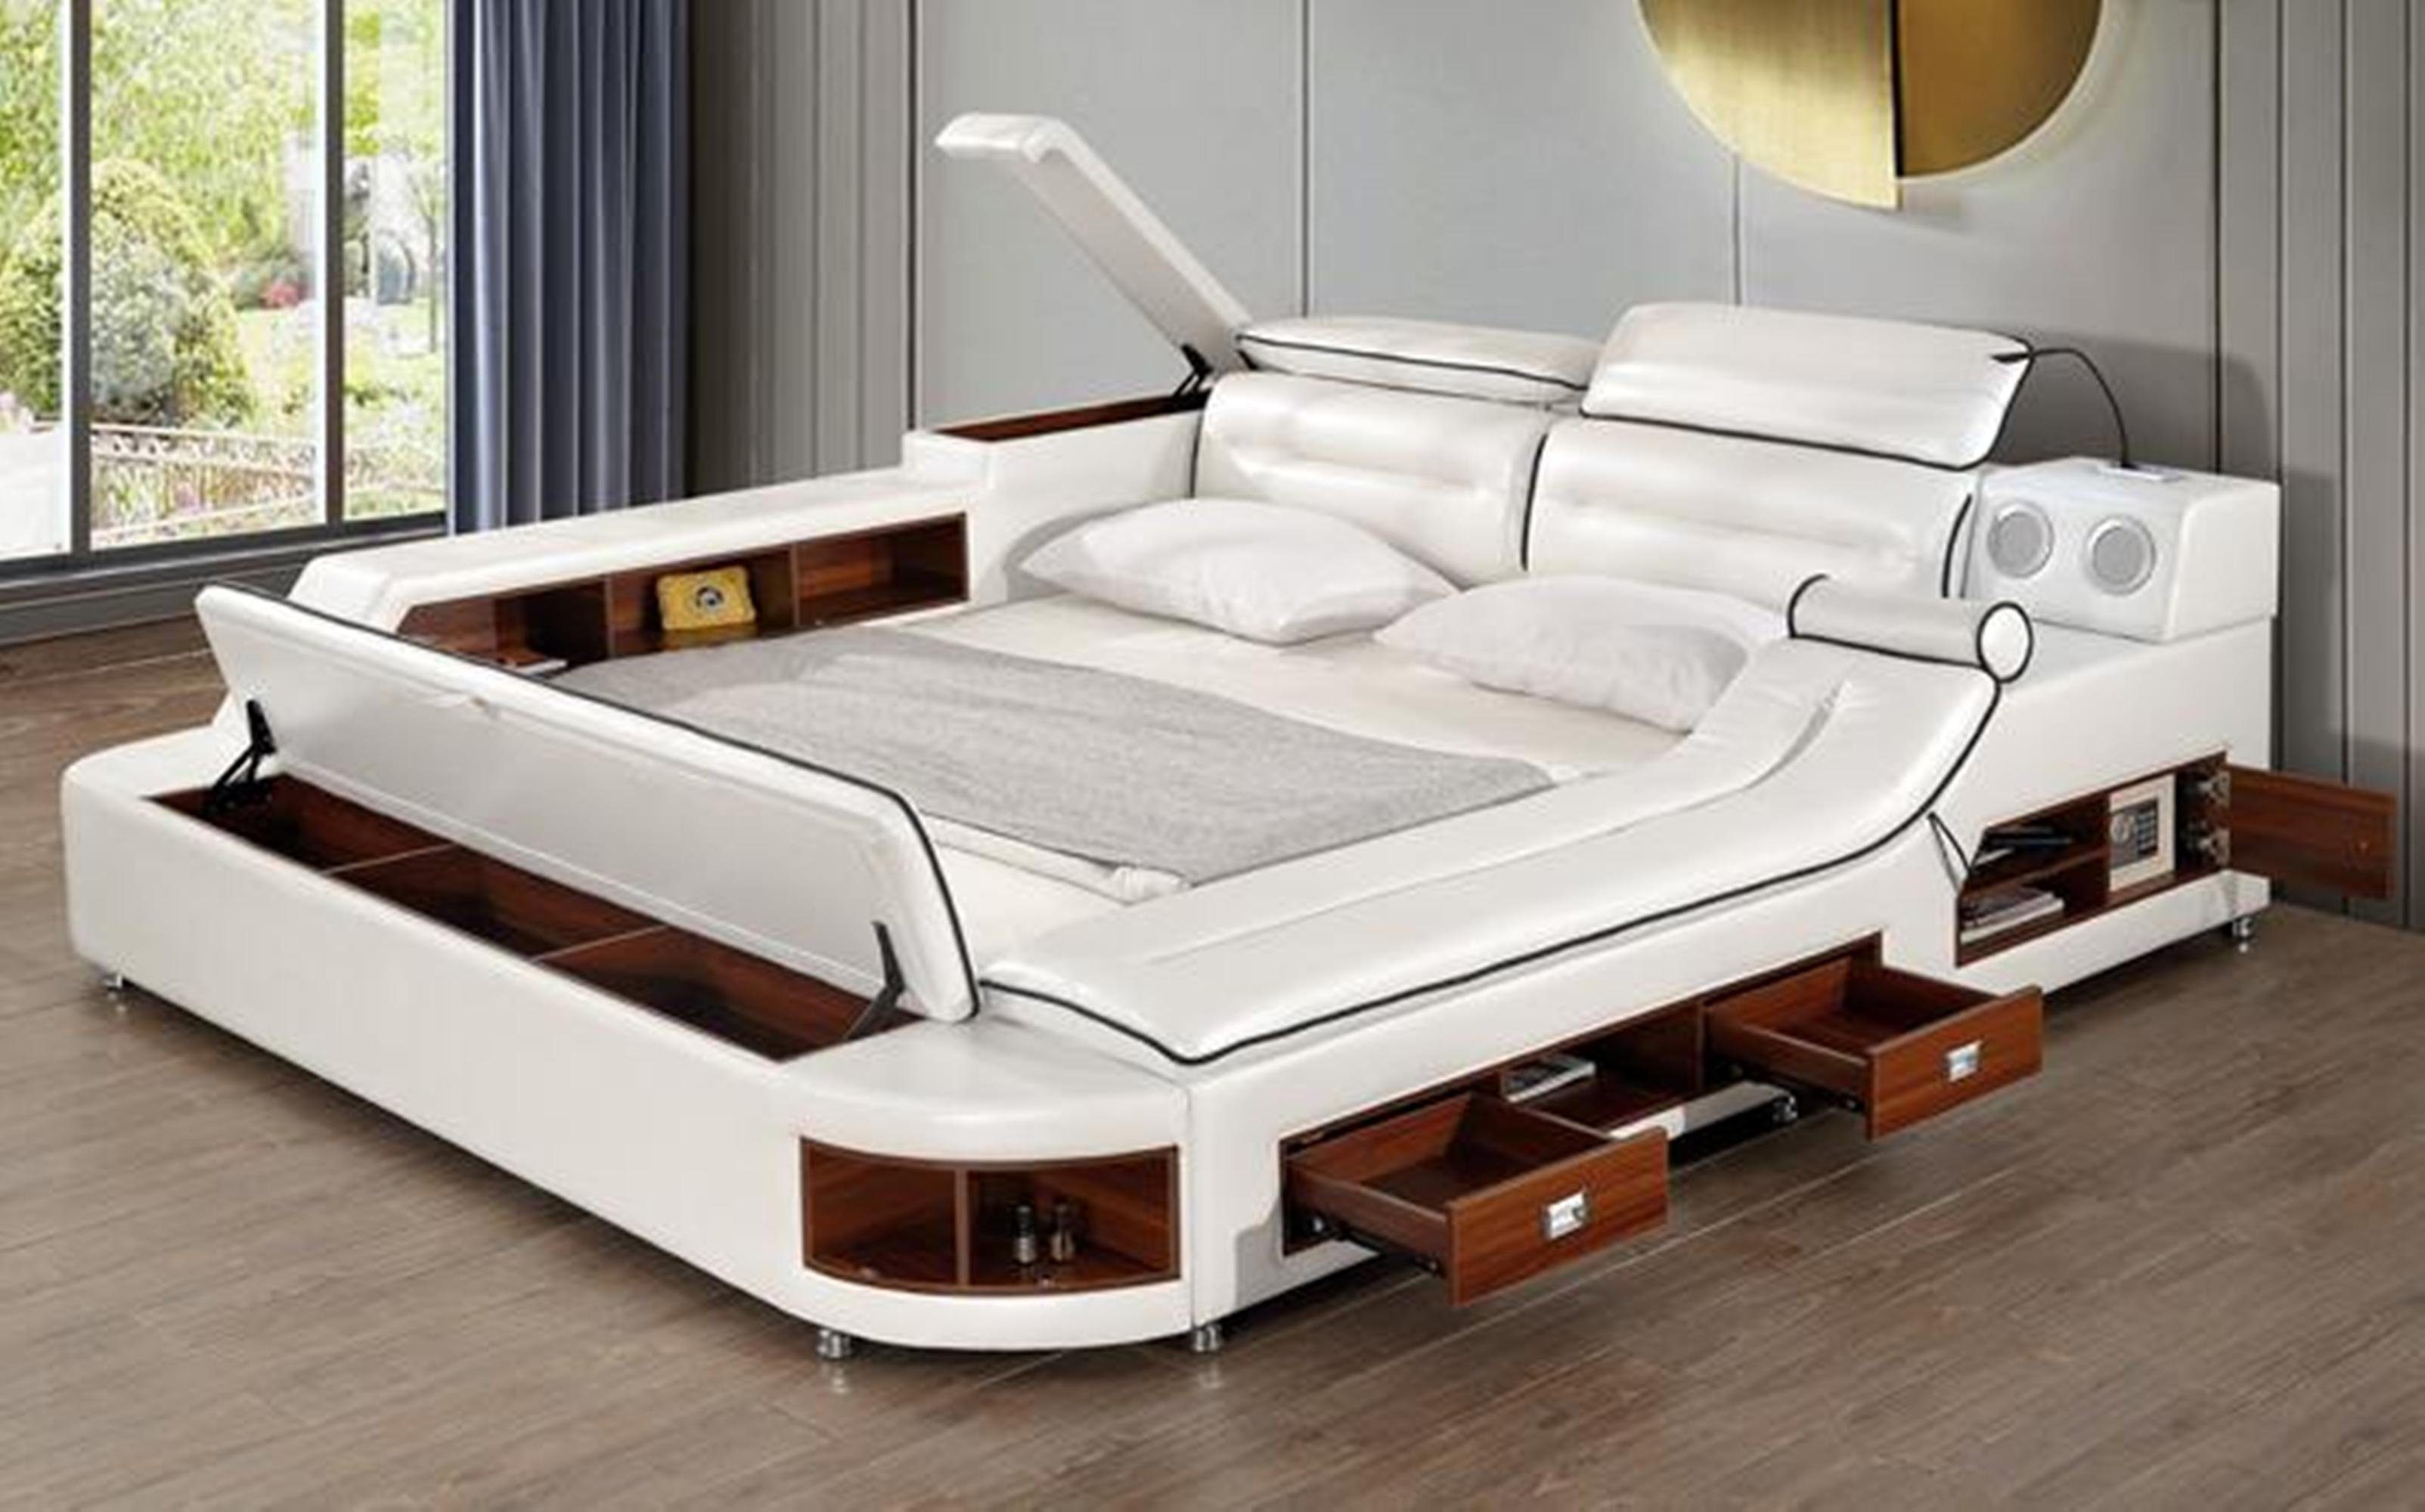 JVmoebel Bett Multifunktions Bett Doppel Ліжка Hotel xxl big Polster Ліжка USB